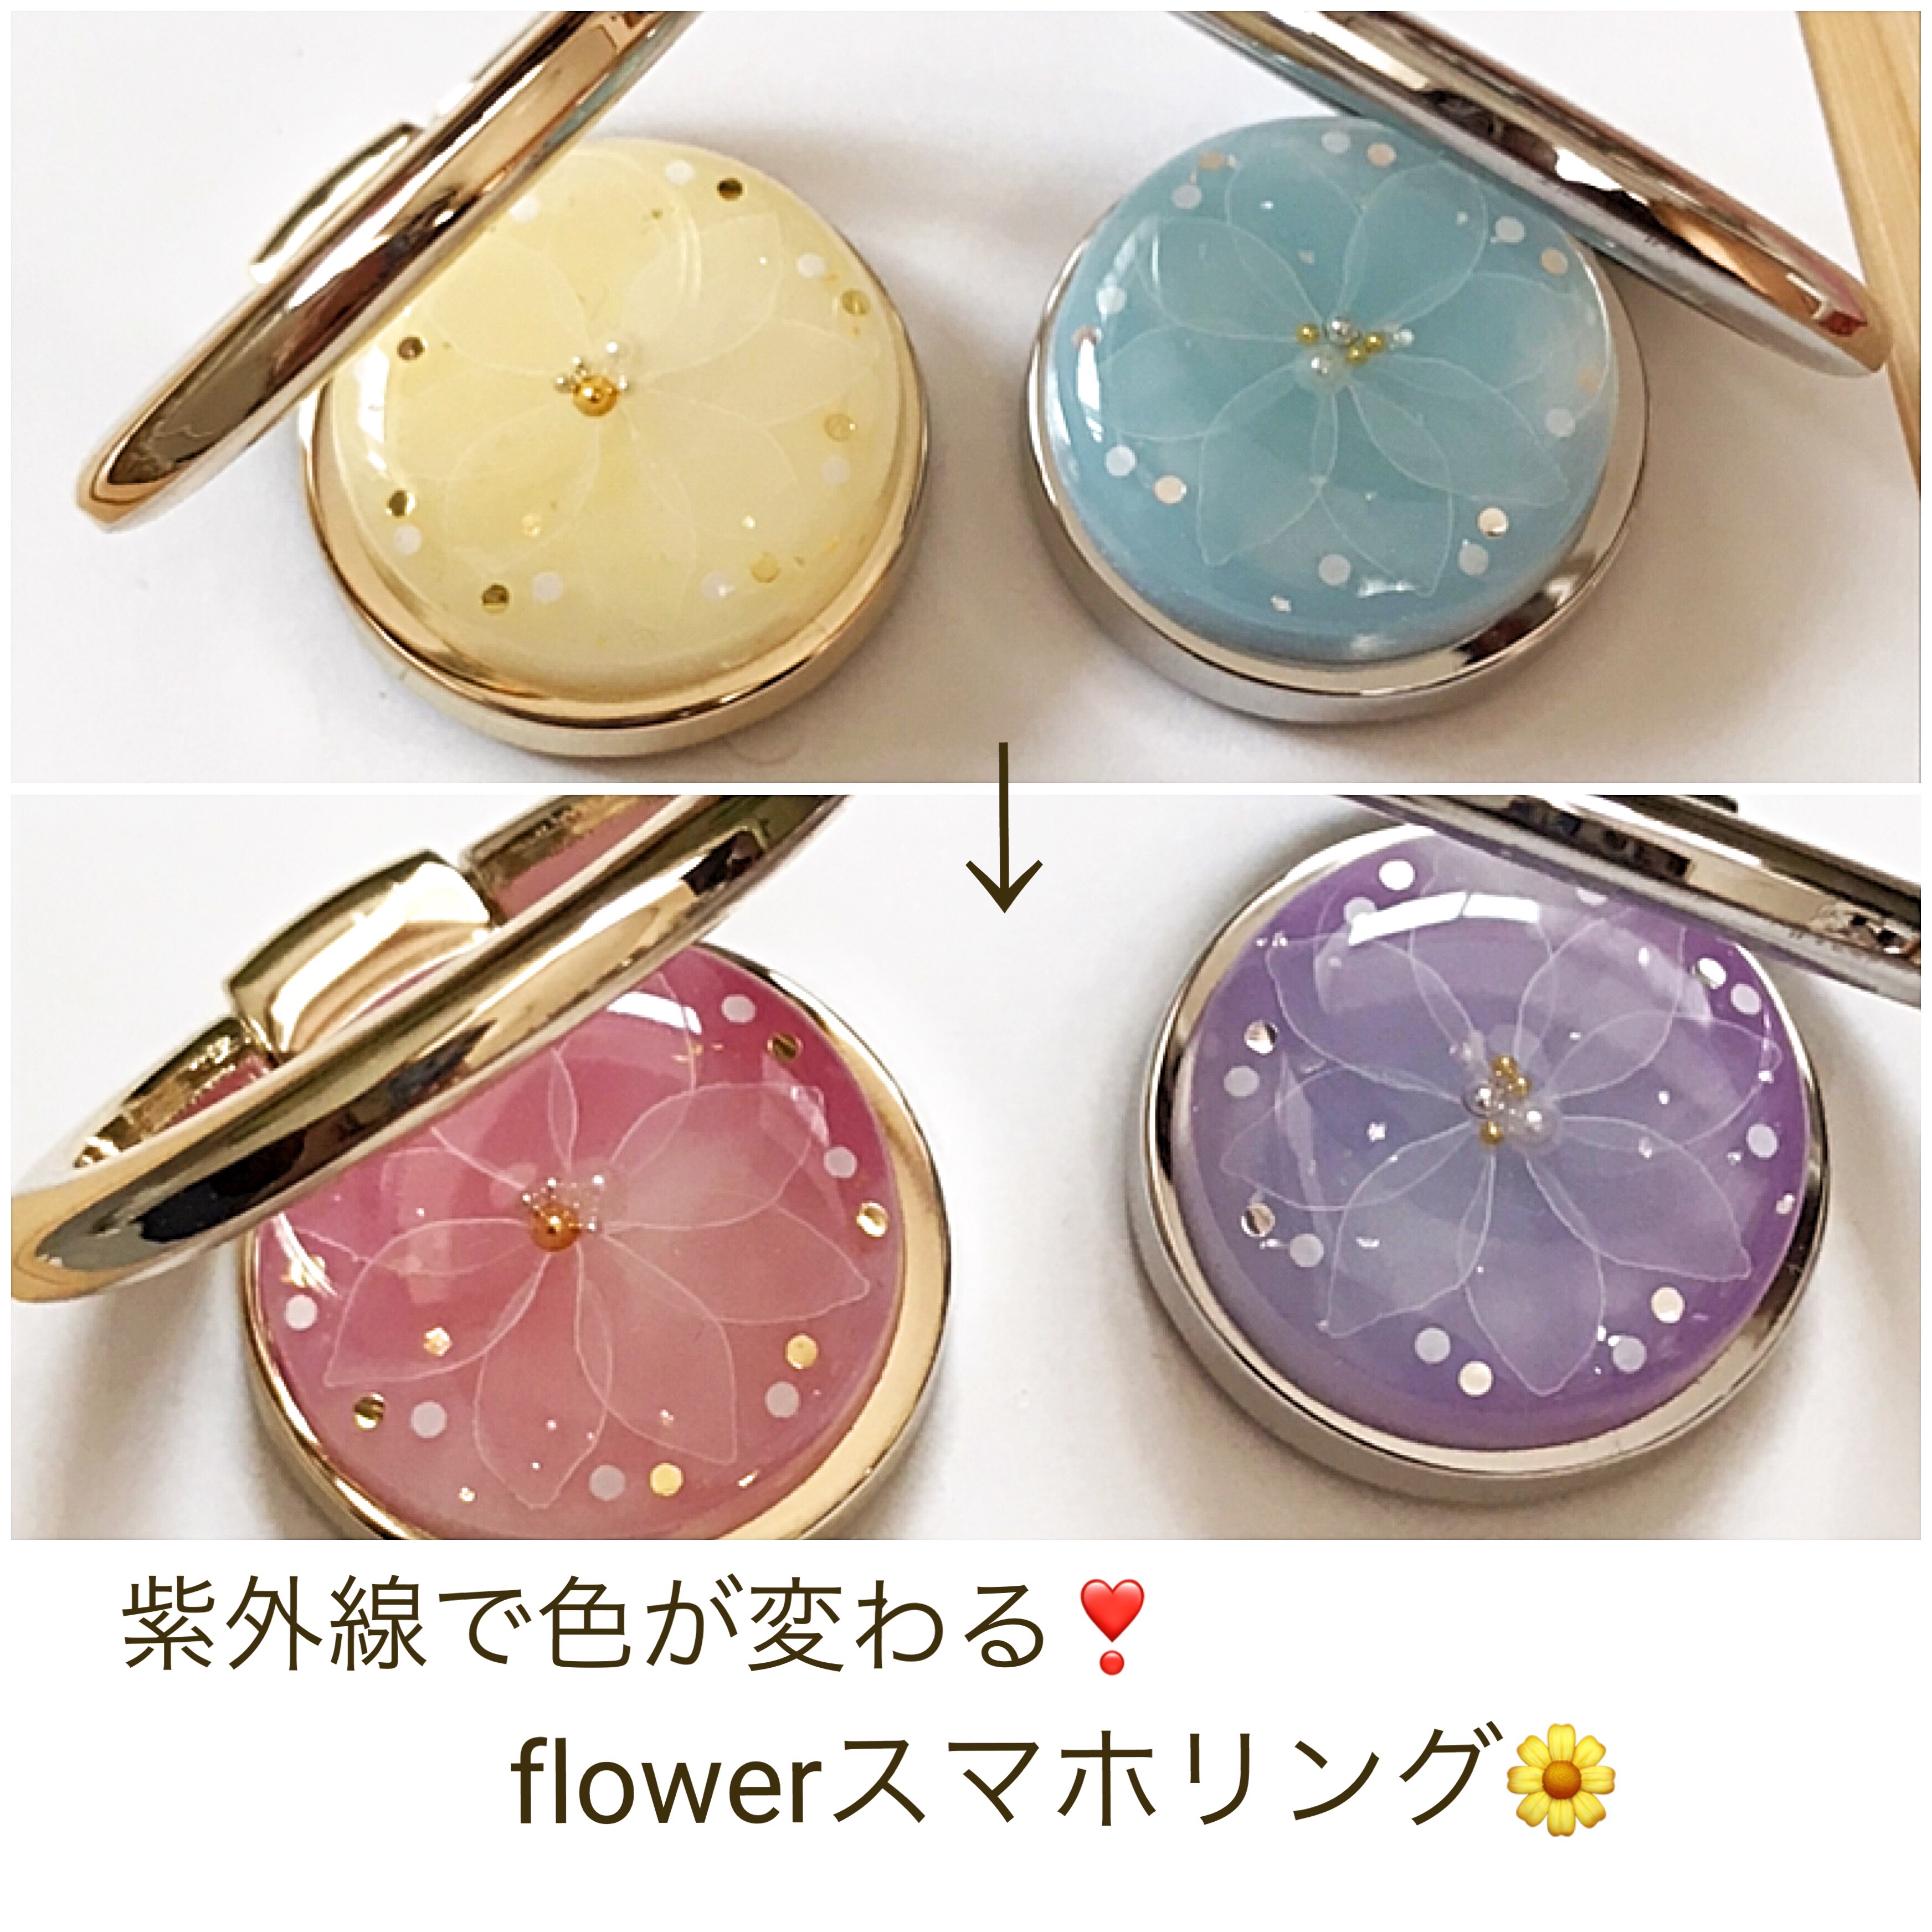 再販 6 選べる2カラー 紫外線で色が変わる Flowerスマホリング Iichi ハンドメイド クラフト作品 手仕事品の通販